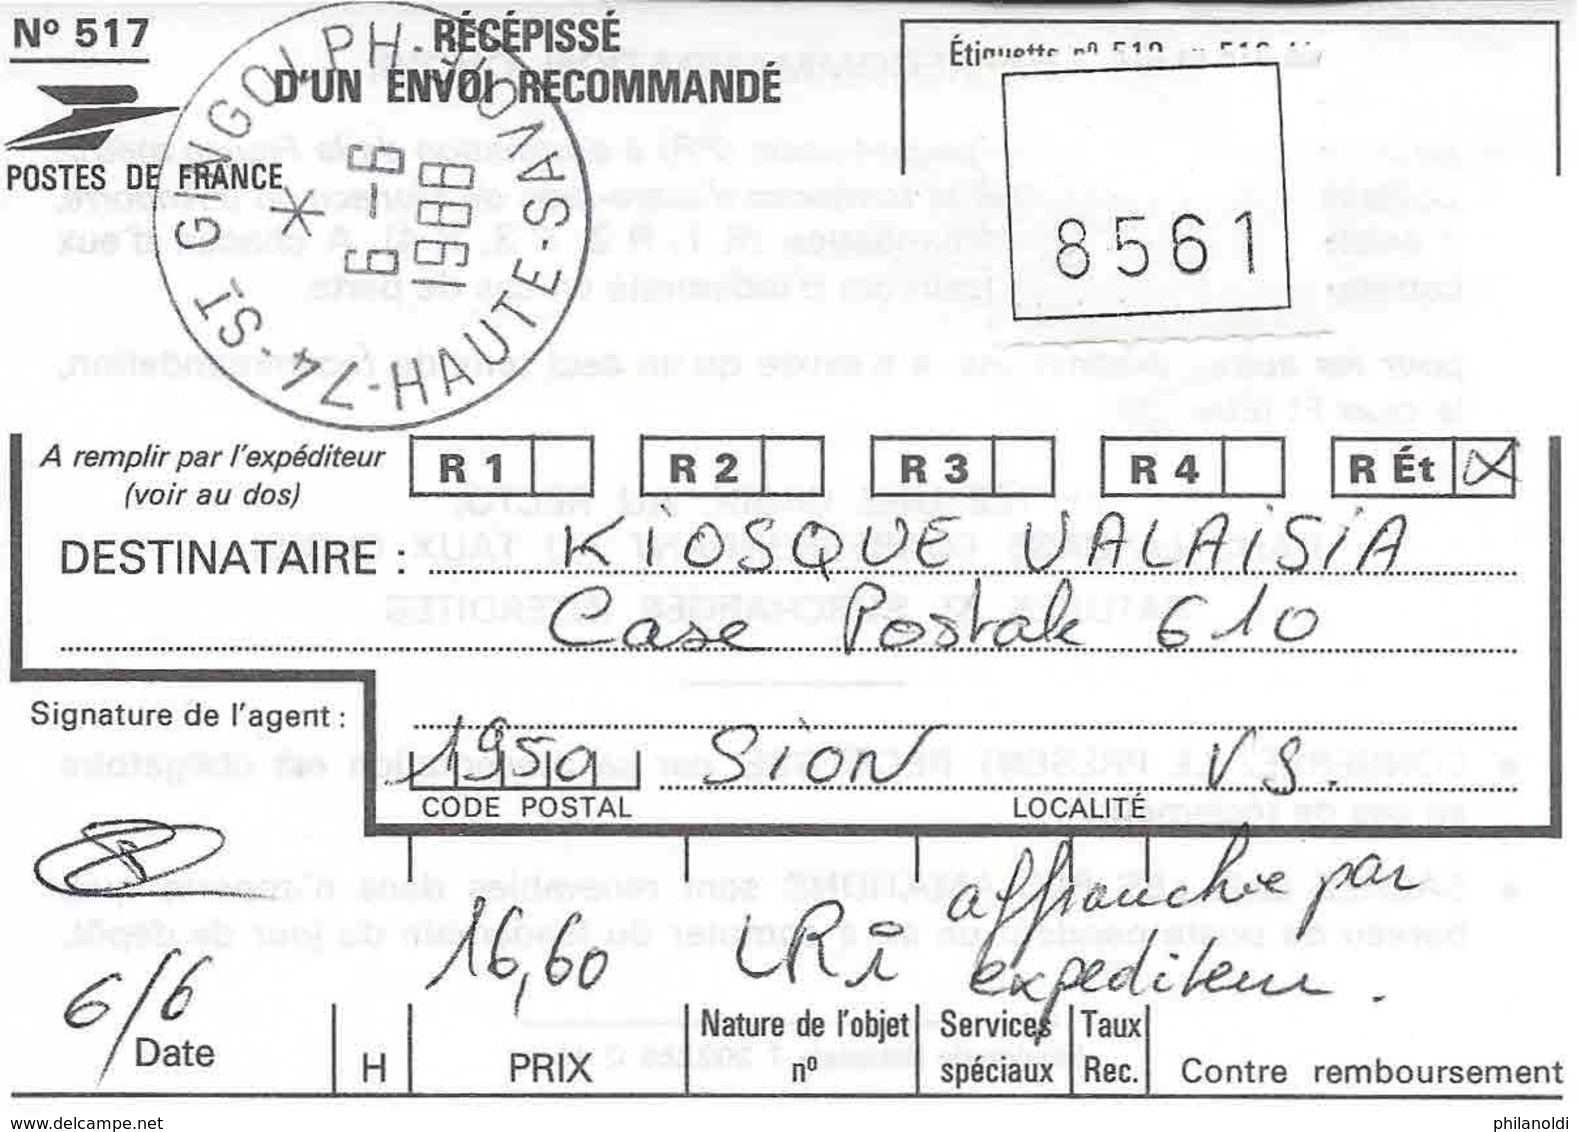 Taxée, France, St-Gingolph Lettre Reco 1988, 8 X Marianne 2,20 Surchargée ECU 0,31, Taxée à Sion Suisse, Timbre 60 Cent. - 1982-1990 Liberté (Gandon)